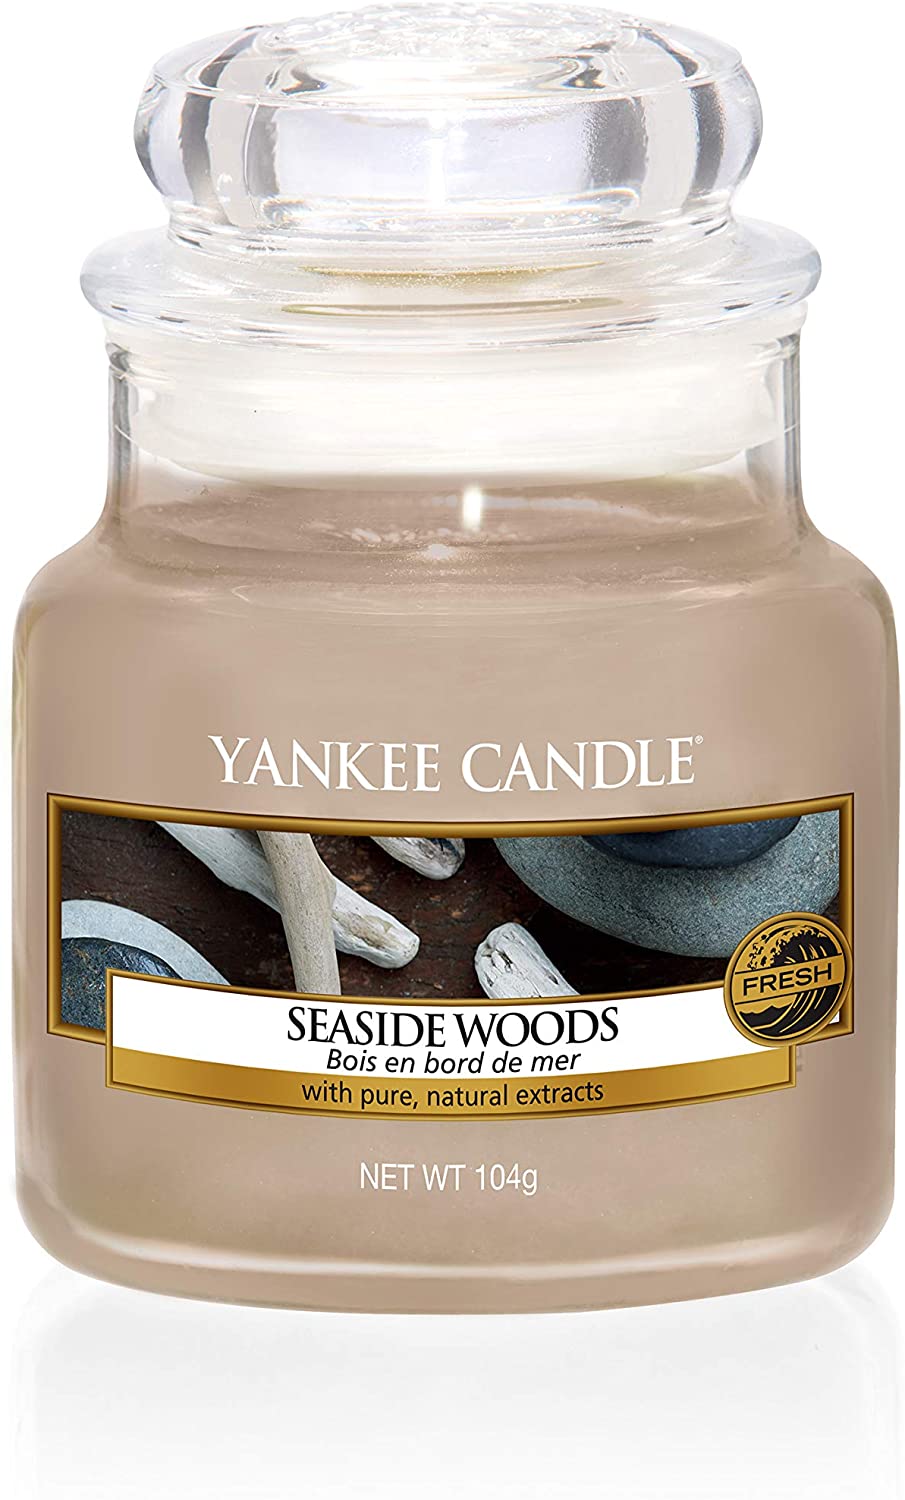 Giara piccola Seaside Woods-Yankee Candle